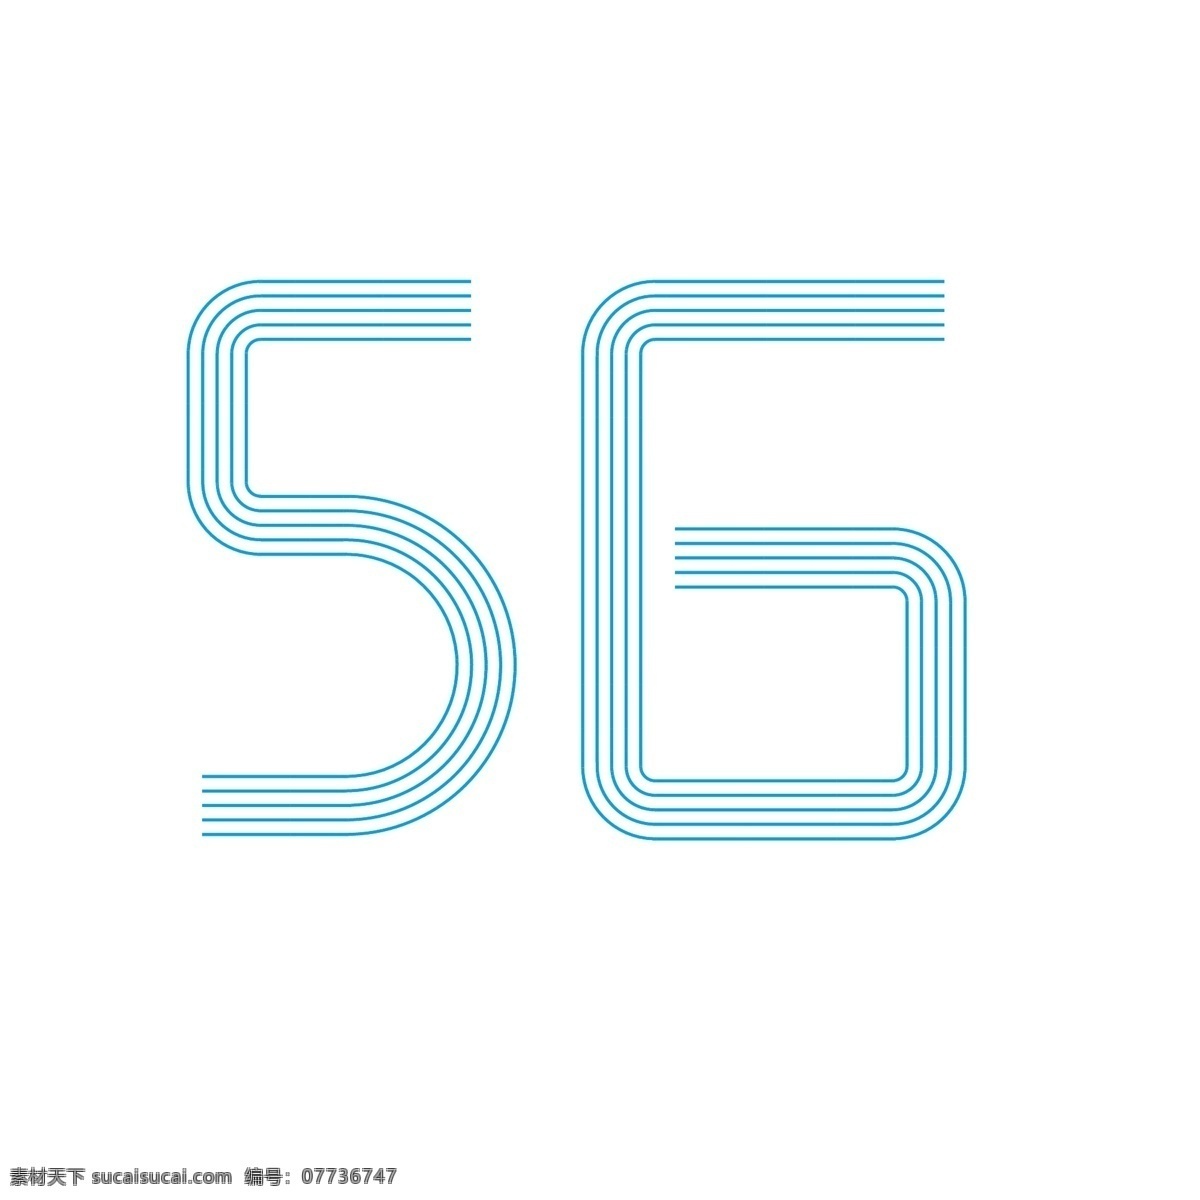 科技 风 线条 5g 网络 艺术 字 5g时代 移动网络 5g信号 联通5g 移动5g 电信5g 5g套餐